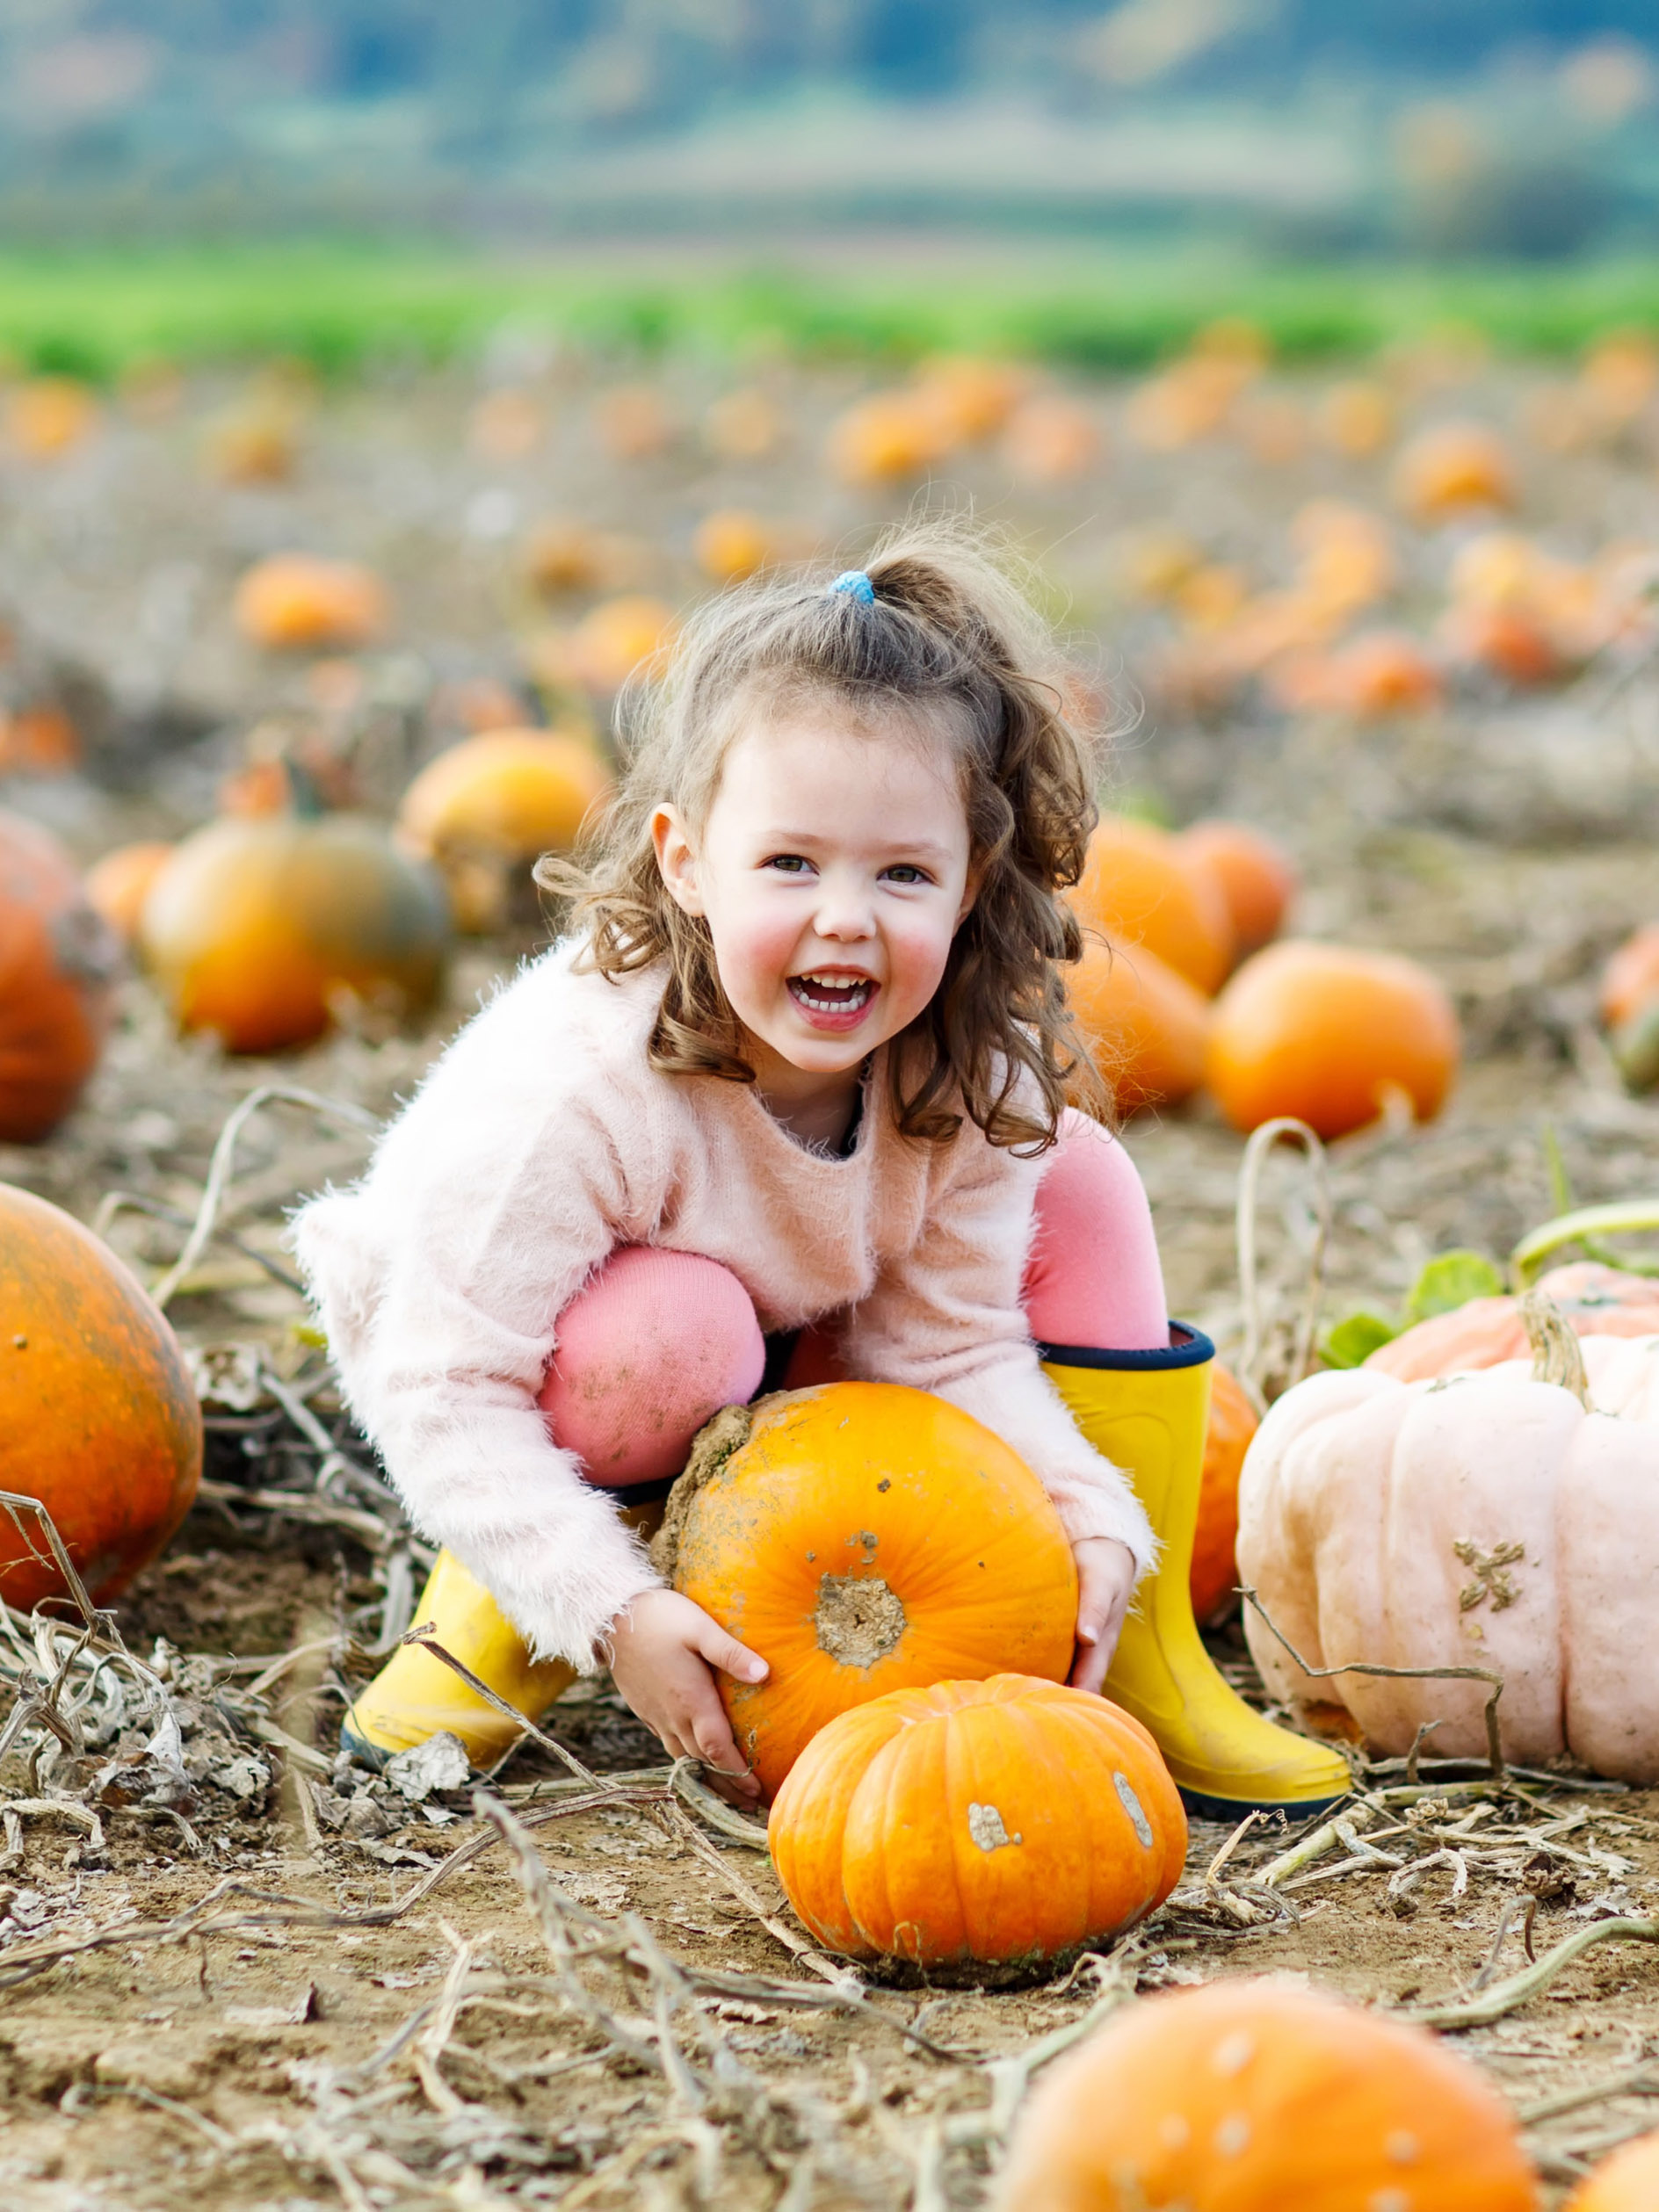 girl having fun picking a pumpkin at a pumpkin patch